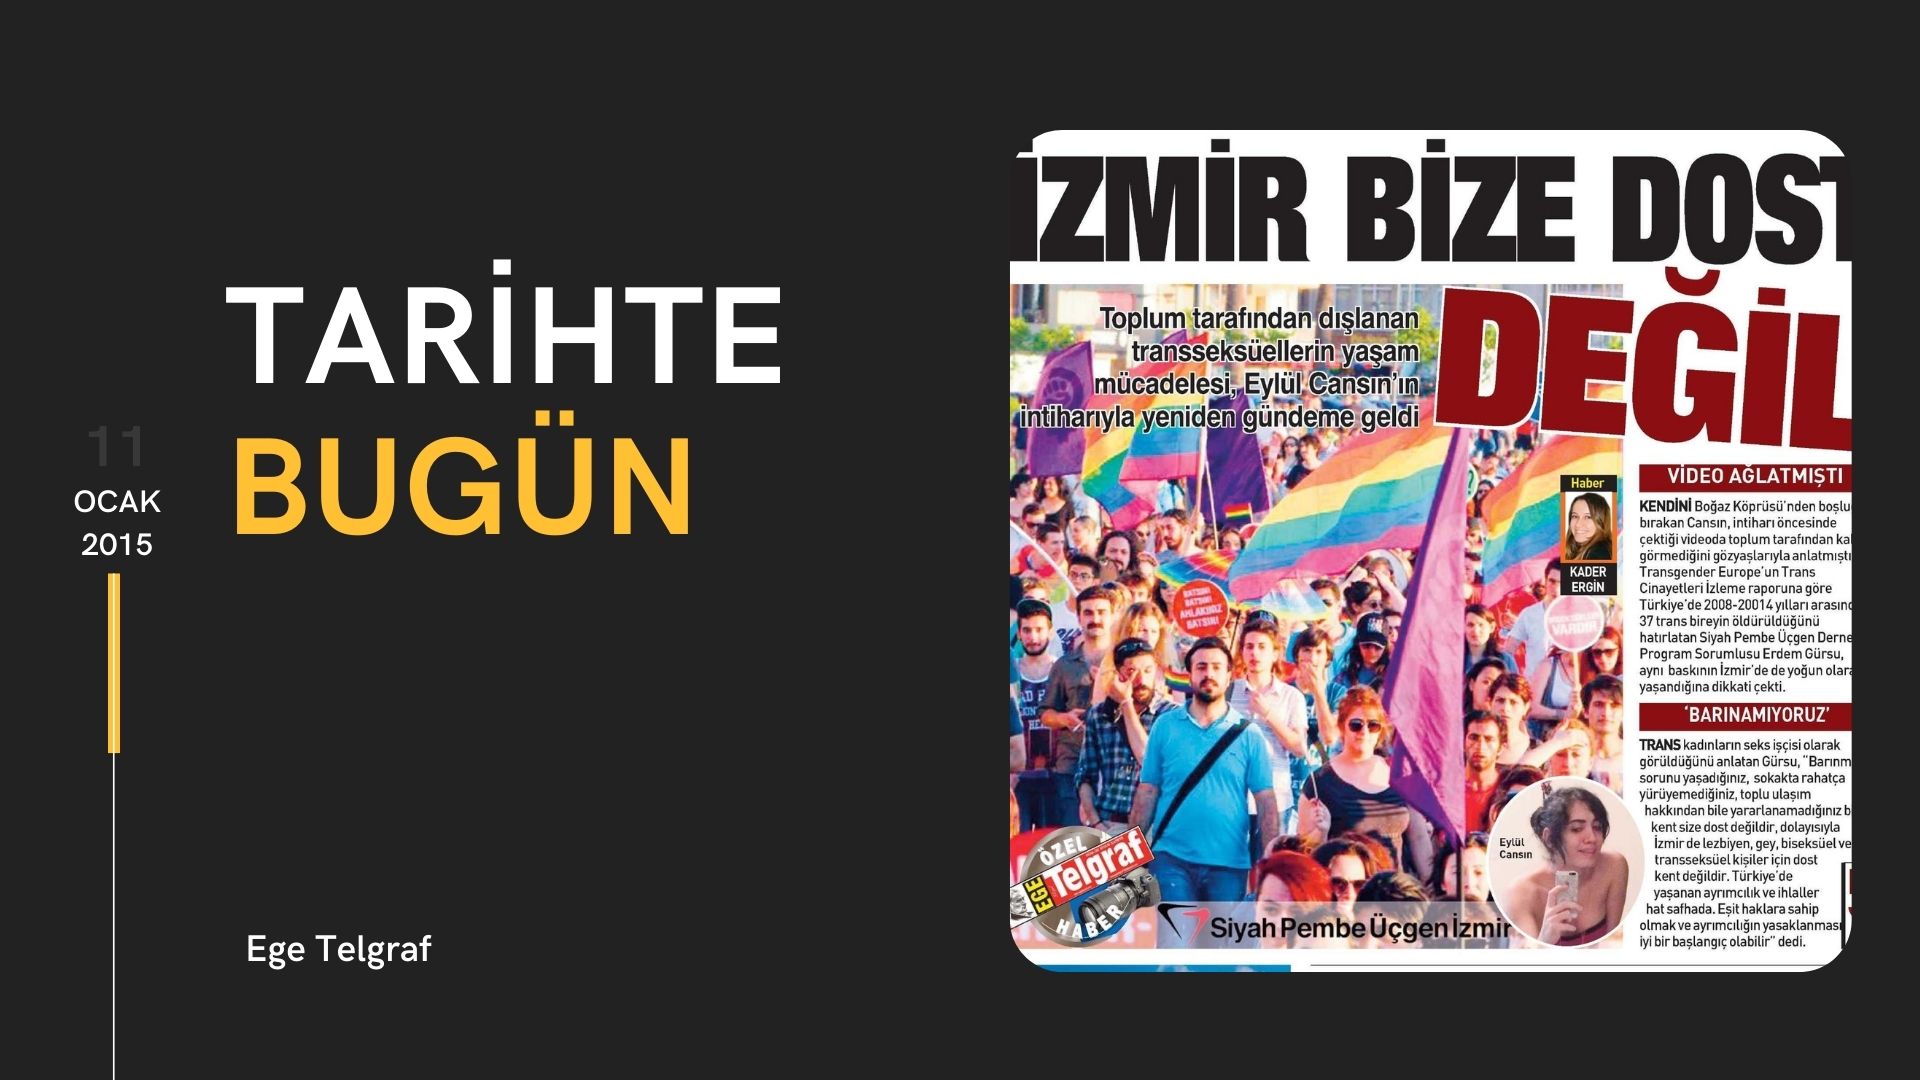 Tarihte bugün: “İzmir bize dost değil” | Kaos GL - LGBTİ+ Haber Portalı